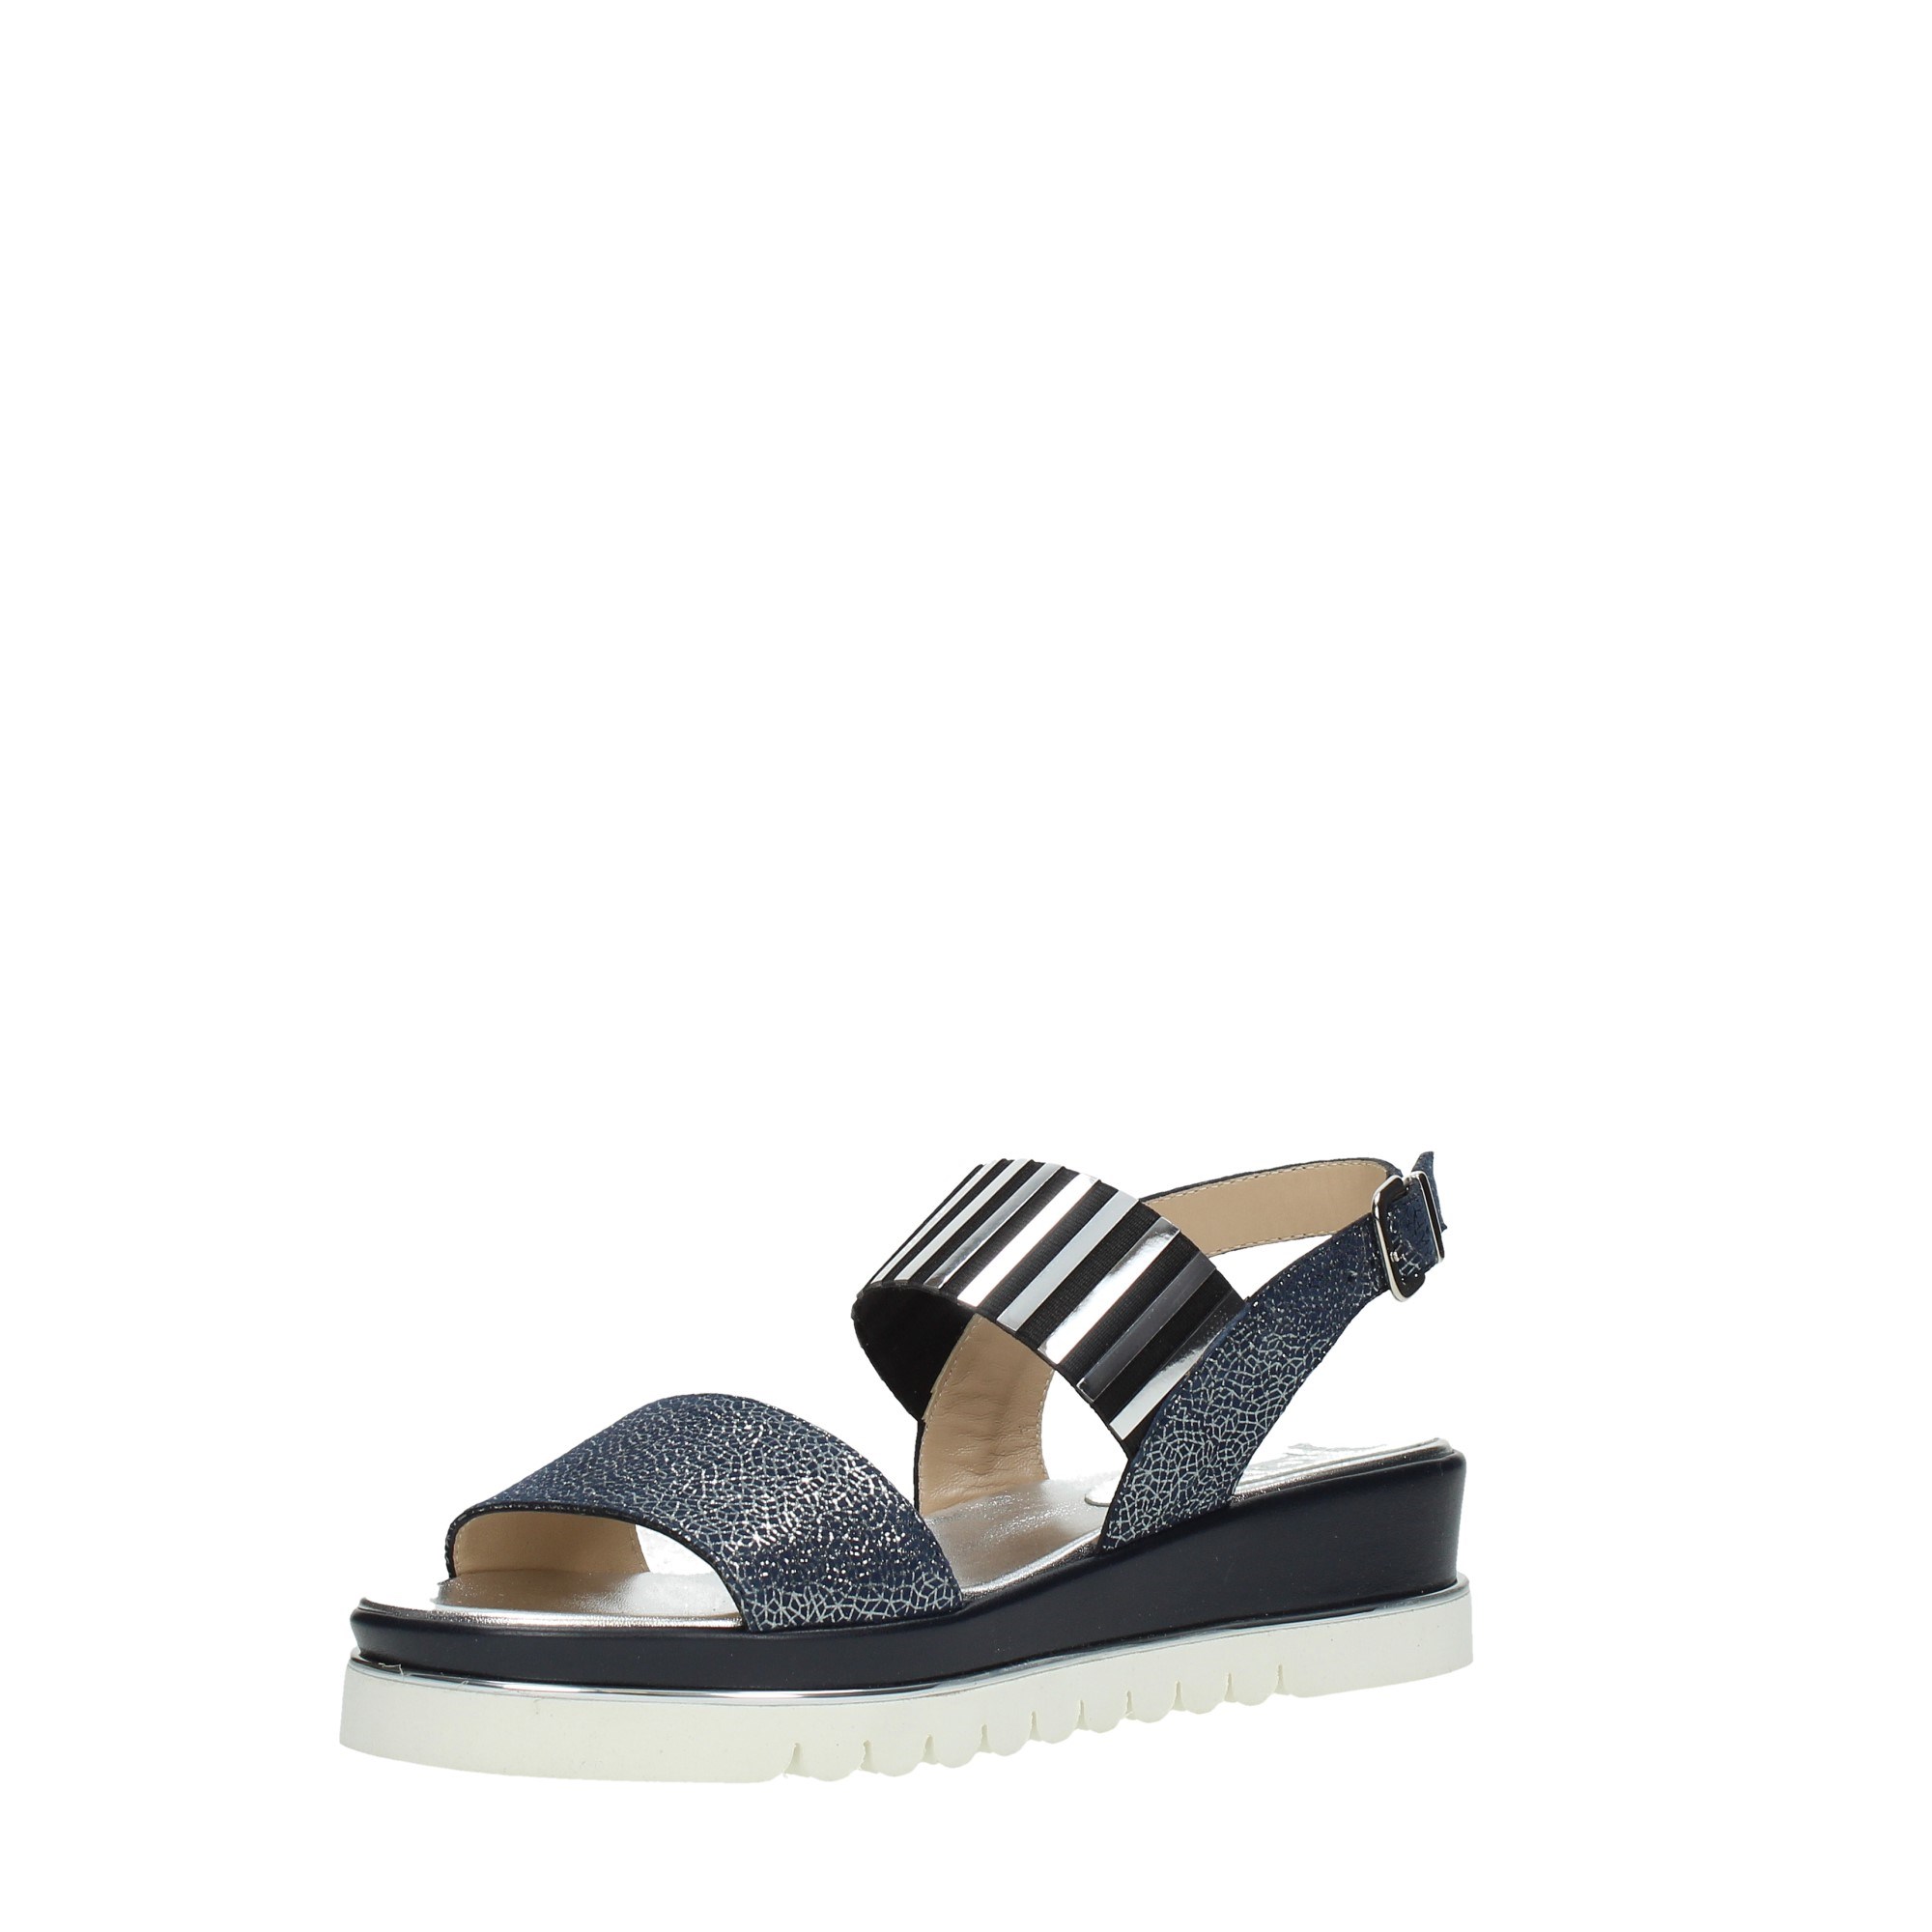 Luca Grossi Shoes Women Wedge Sandals C4565/8058